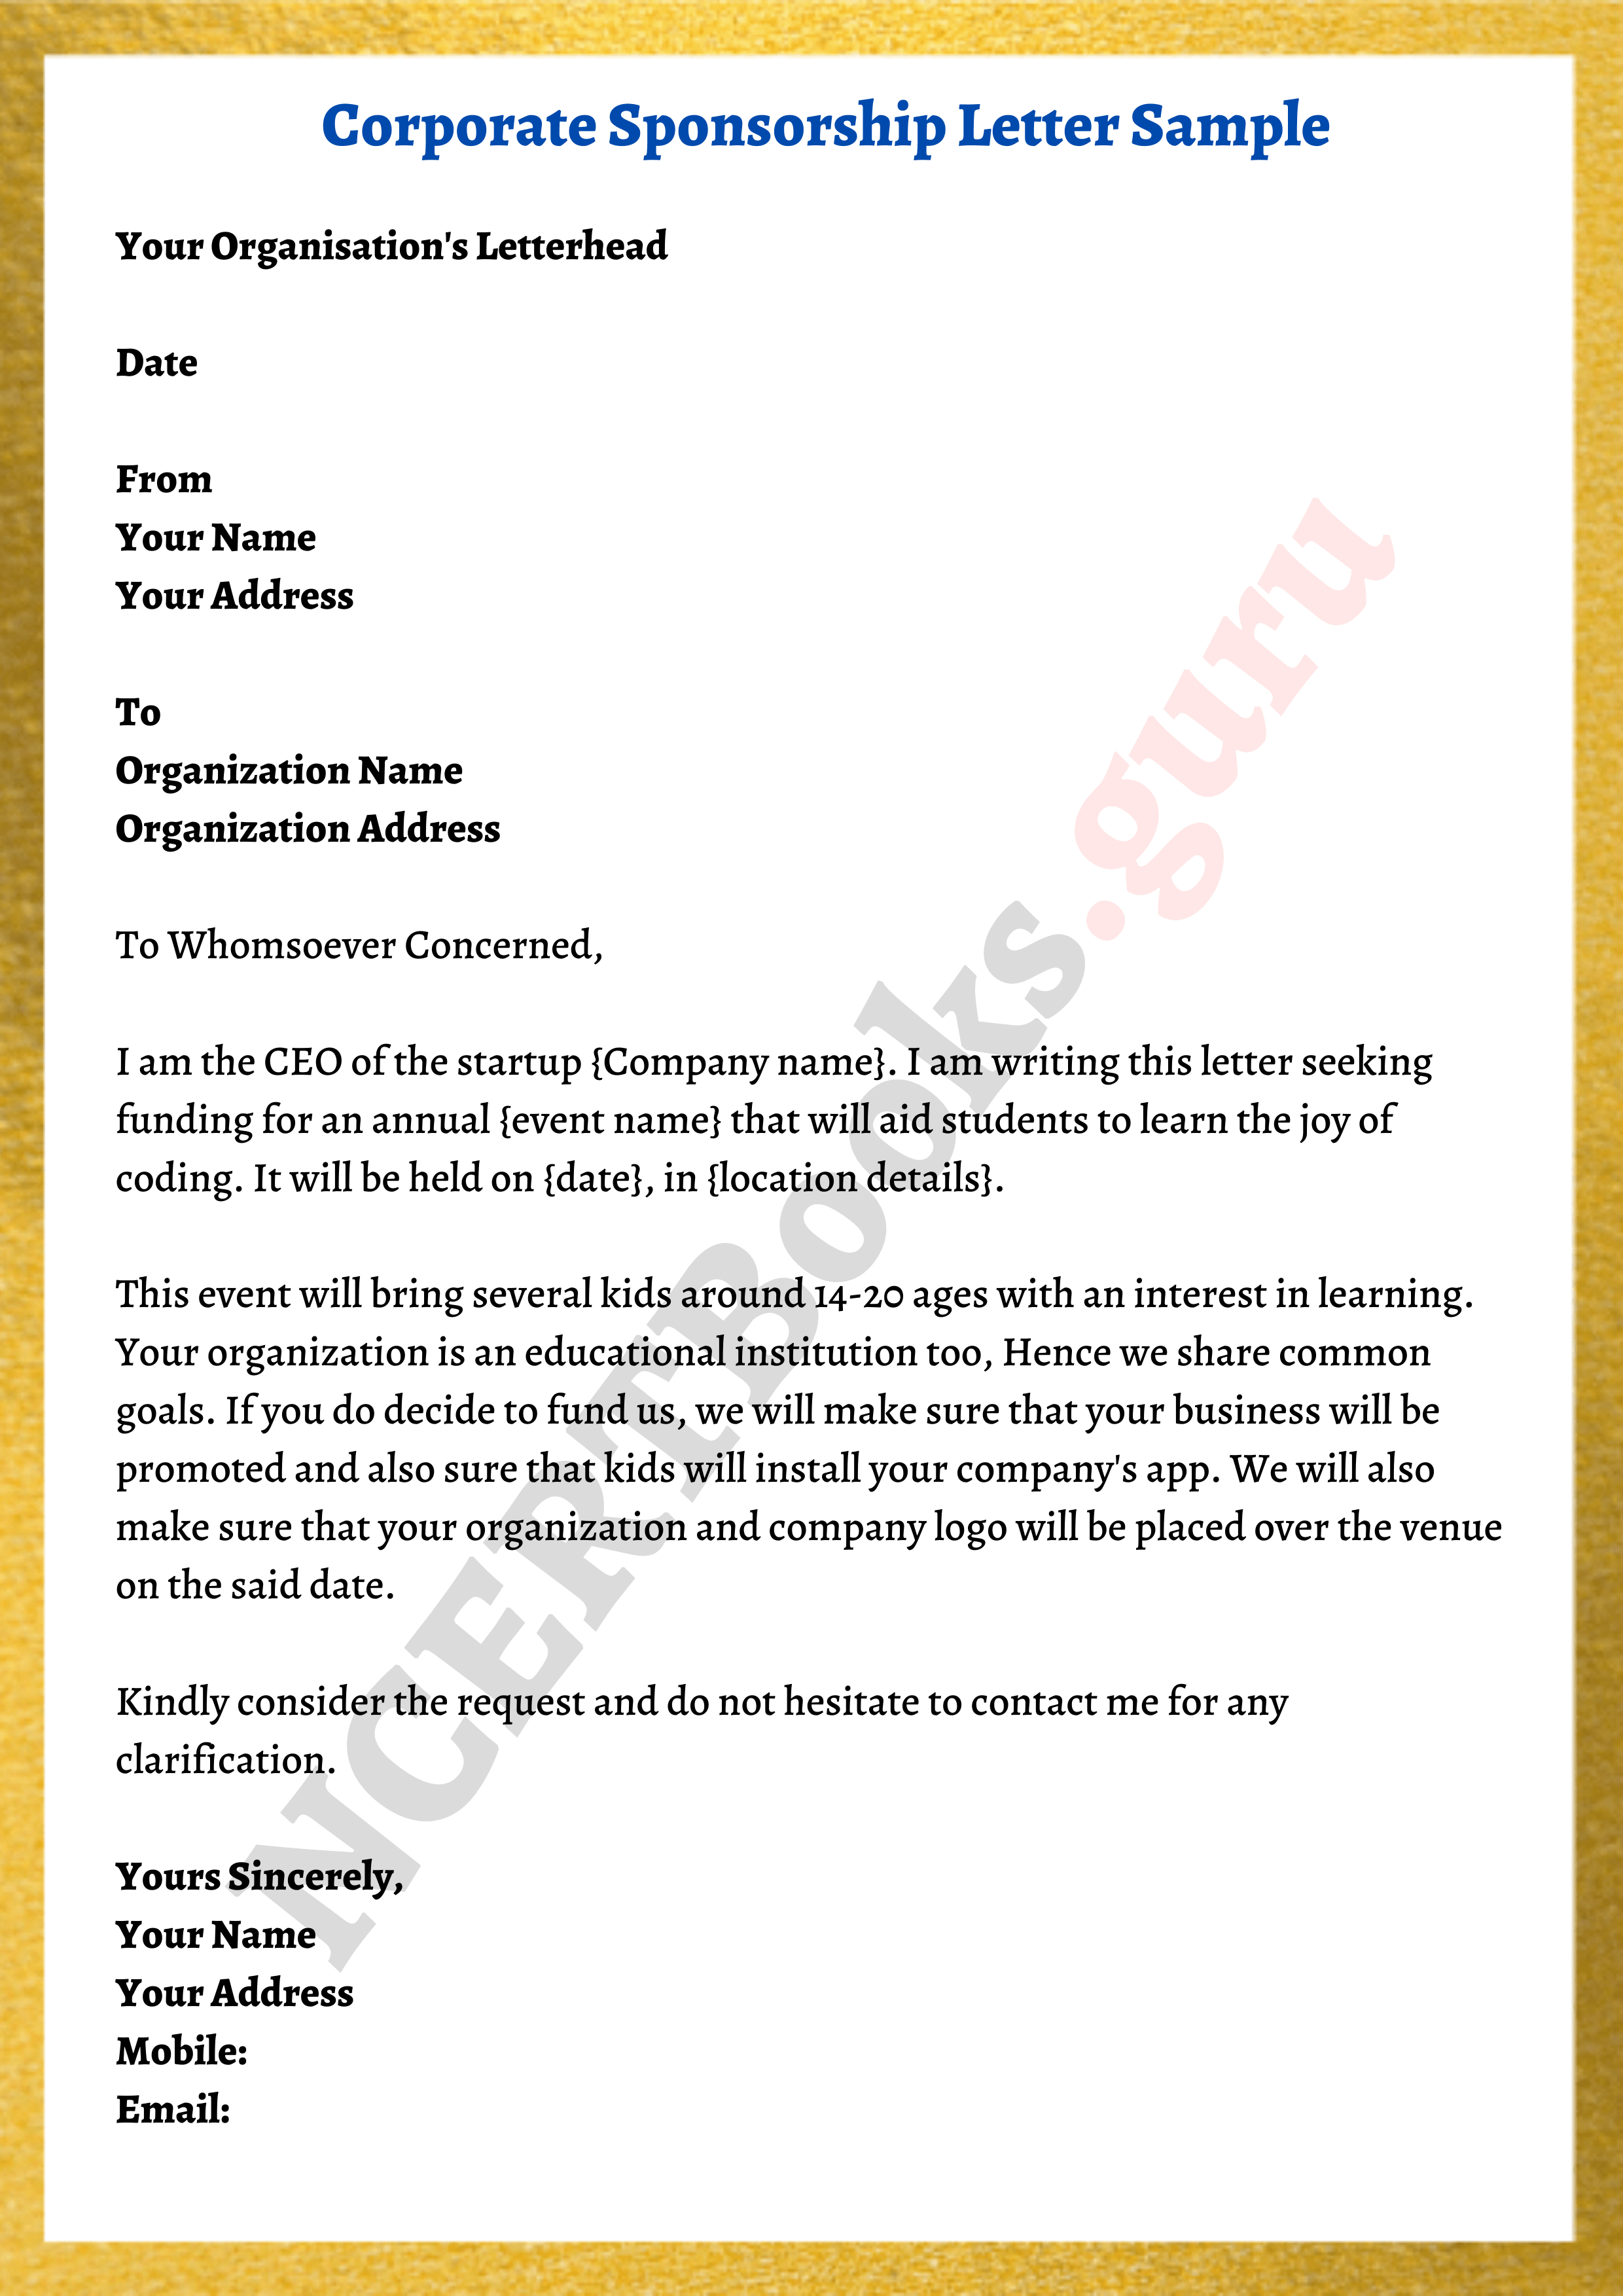 sample letter for corporate sponsorship